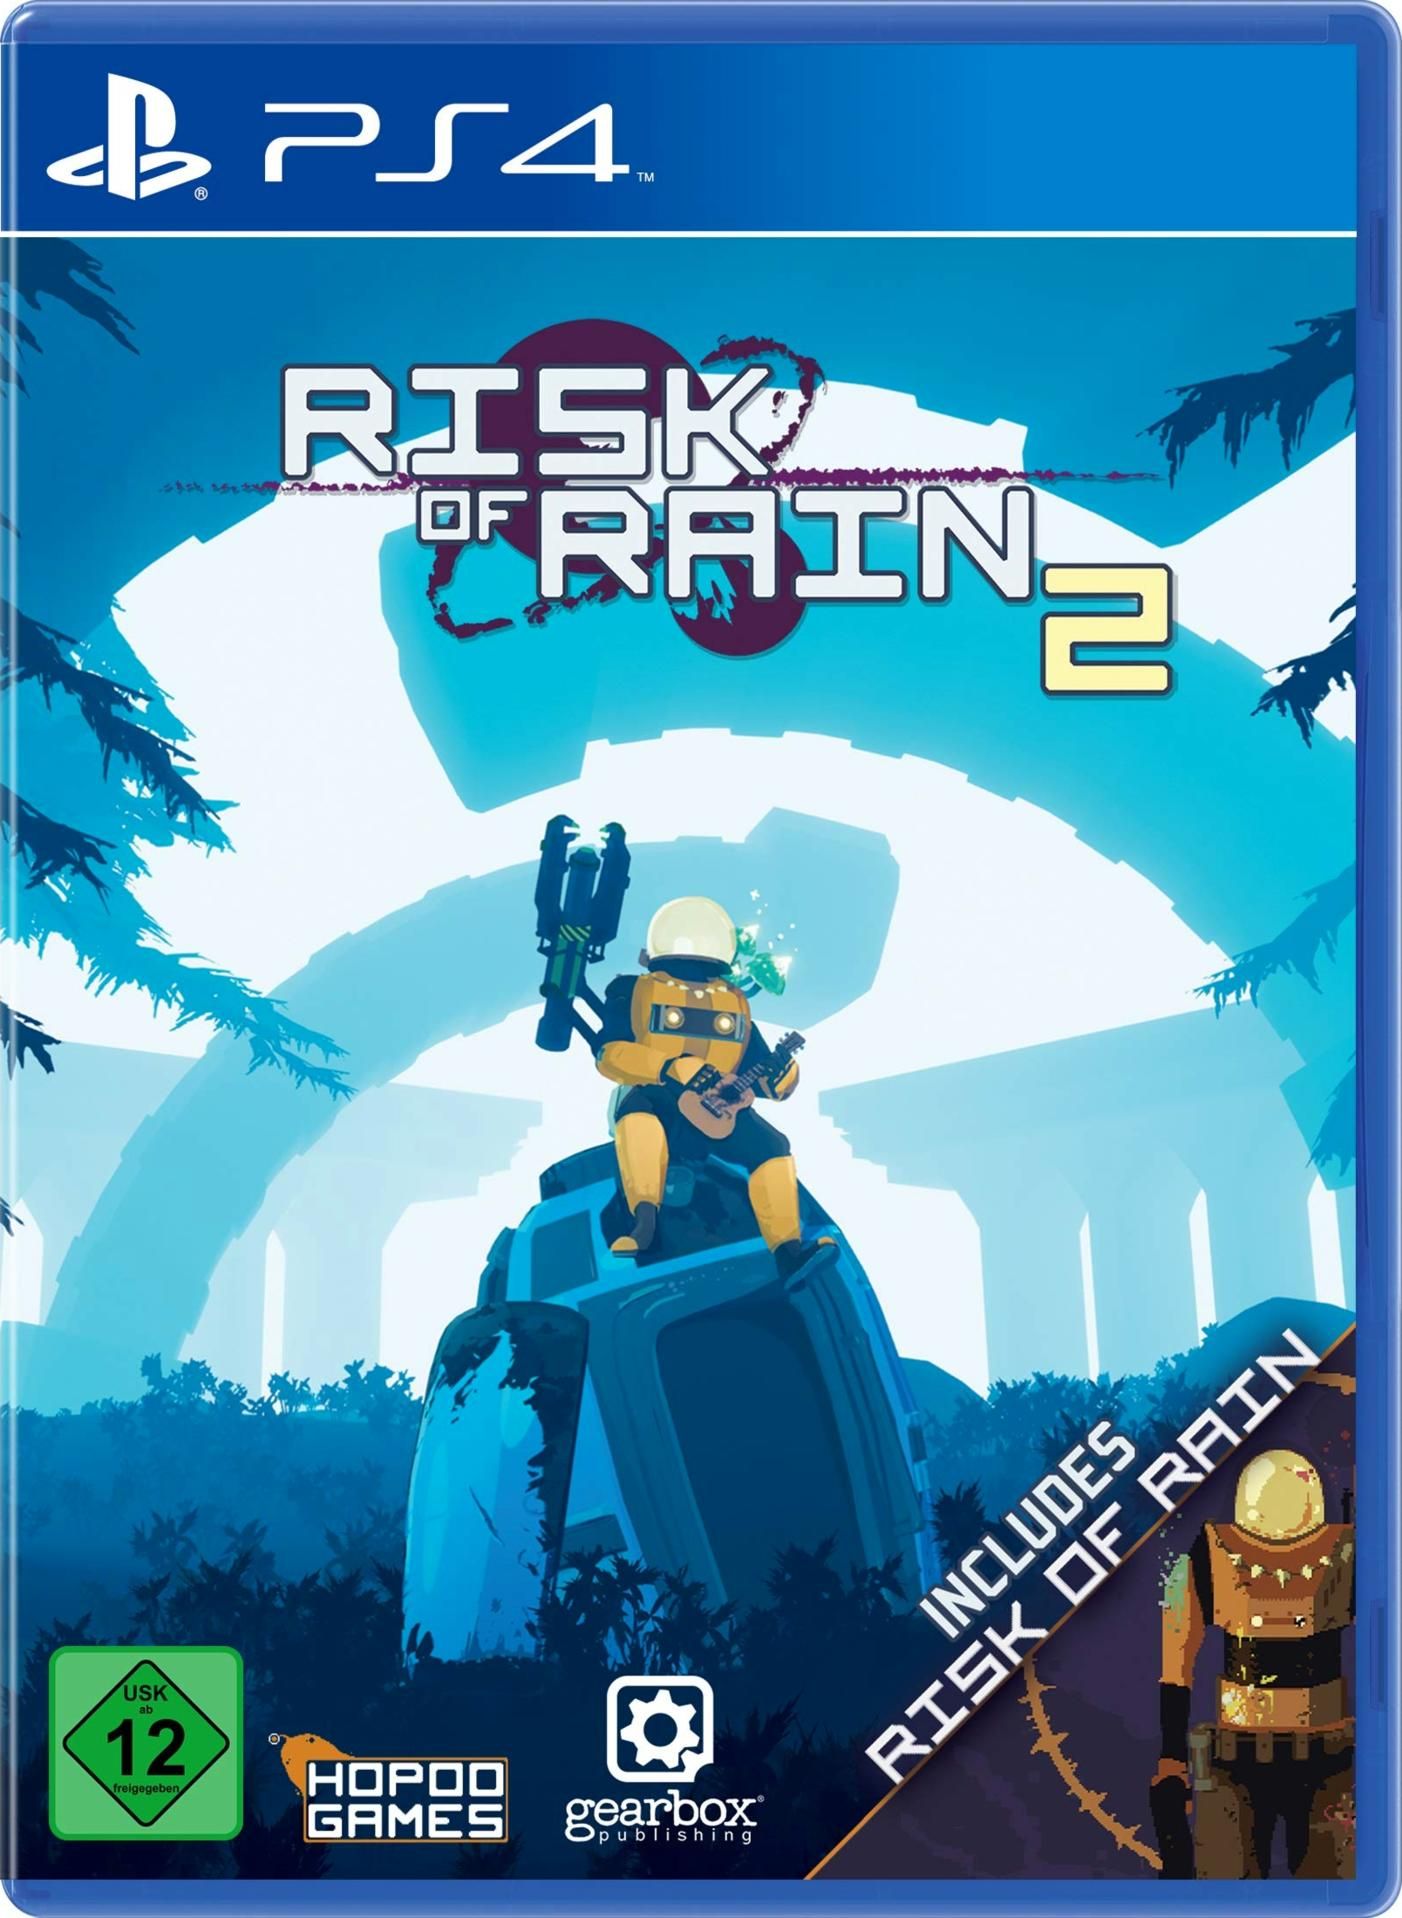 Rain - 2 [PlayStation 4] Risk of